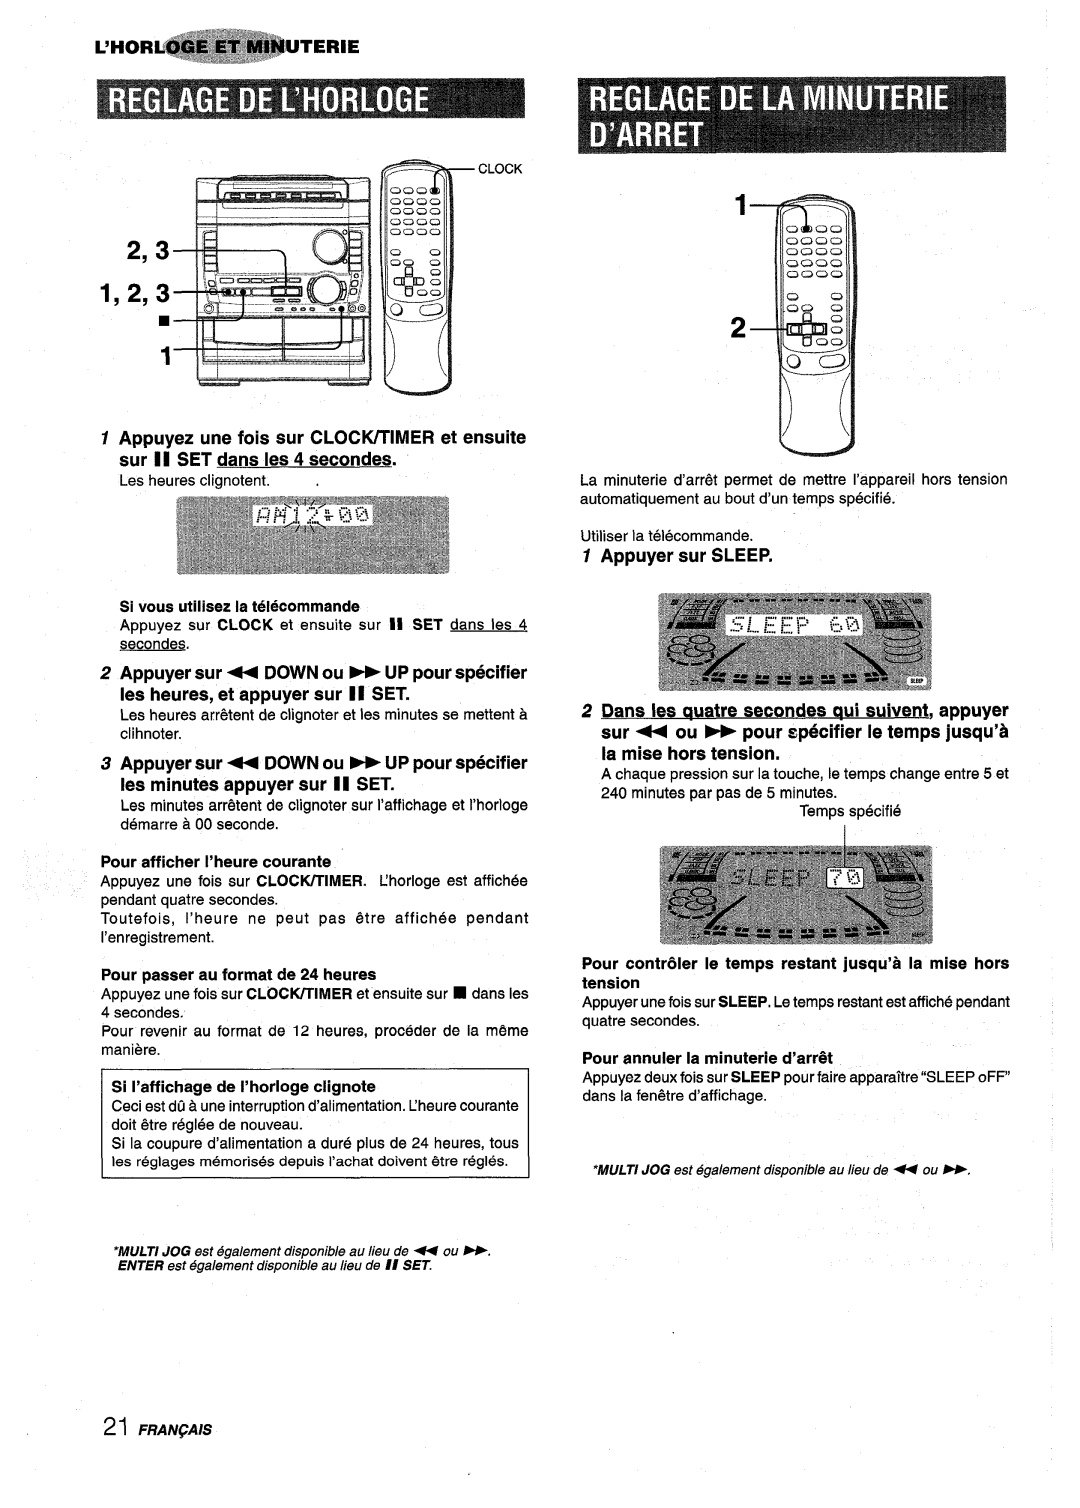 Sony NSX-A959 manual 2,3*, al 1,2, Appuyer sur - DOWN ou UP pour specifier, Ies heures, et appuyer sur 11 SET 